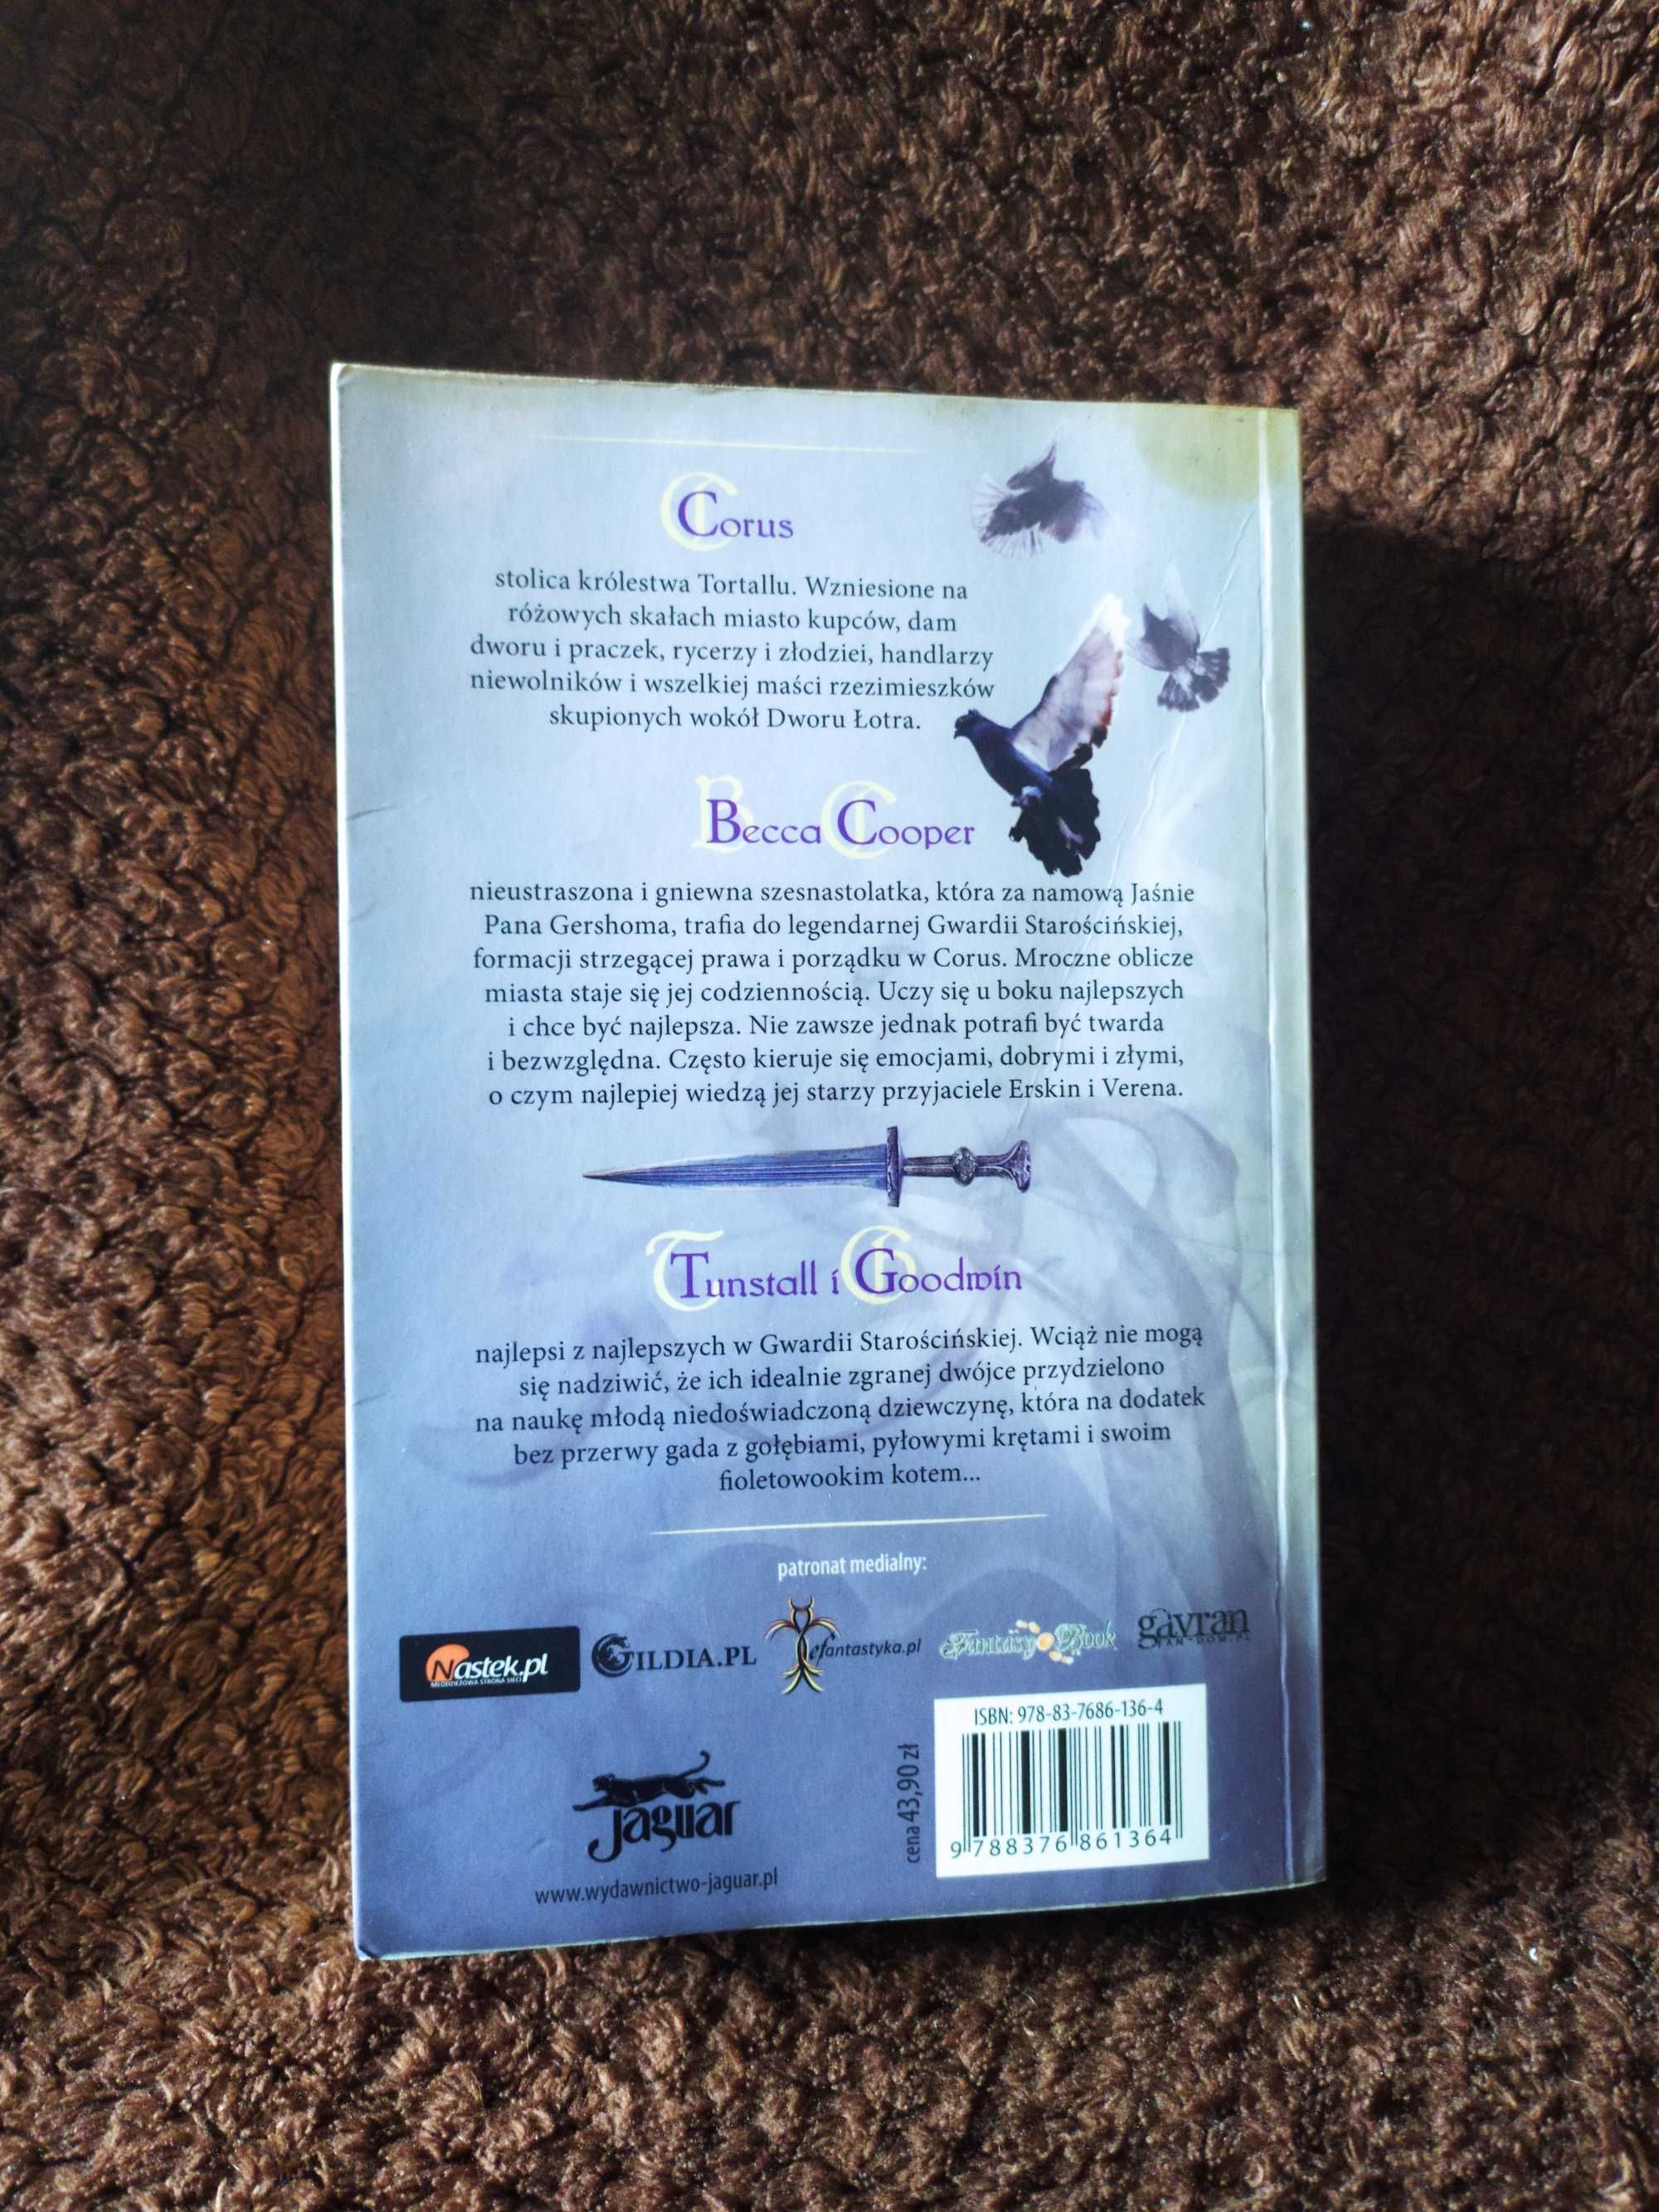 Książka "Klątwa Opali"  Tamora Pierce